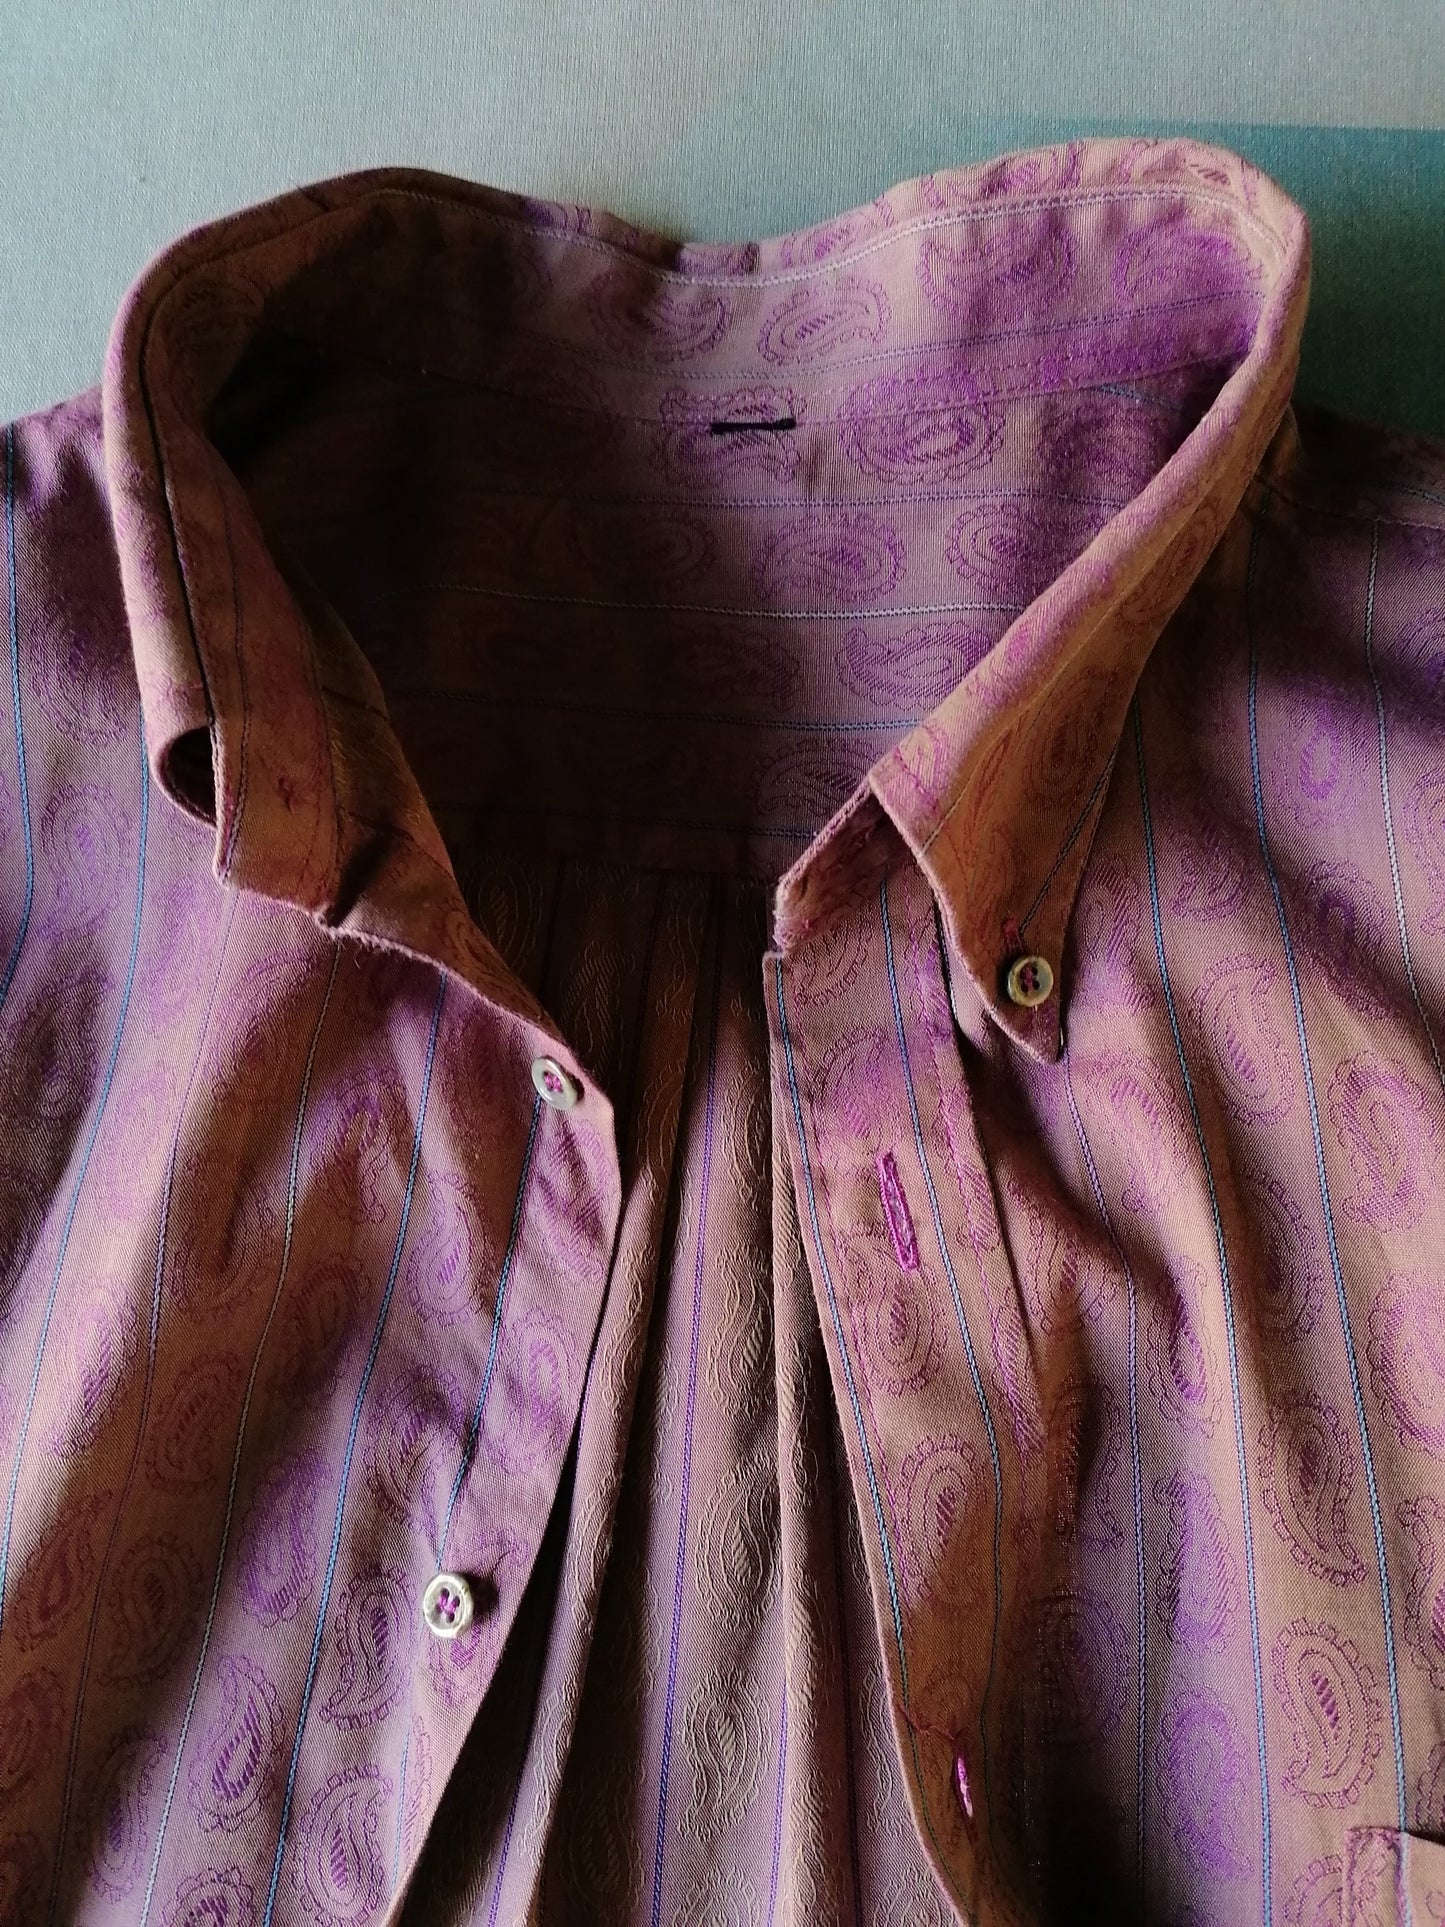 Camisa de la vendimia. Motivo púrpura con brillo metálico. Tamaño XL.